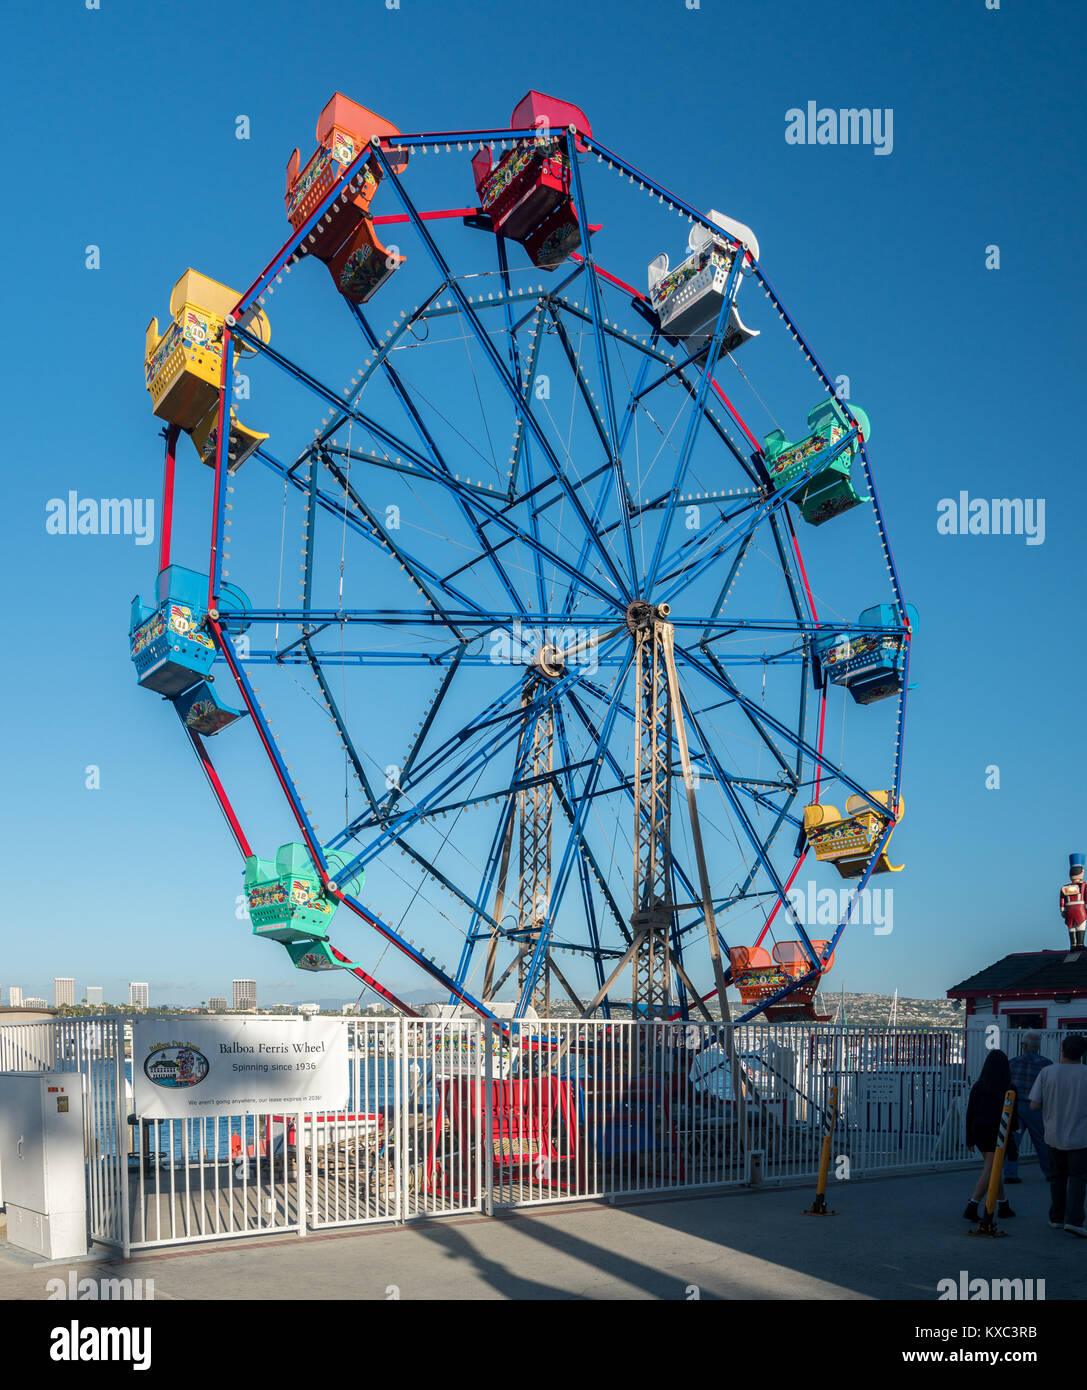 Balboa Ferris wheel at Newport Beach in California Stock Photo